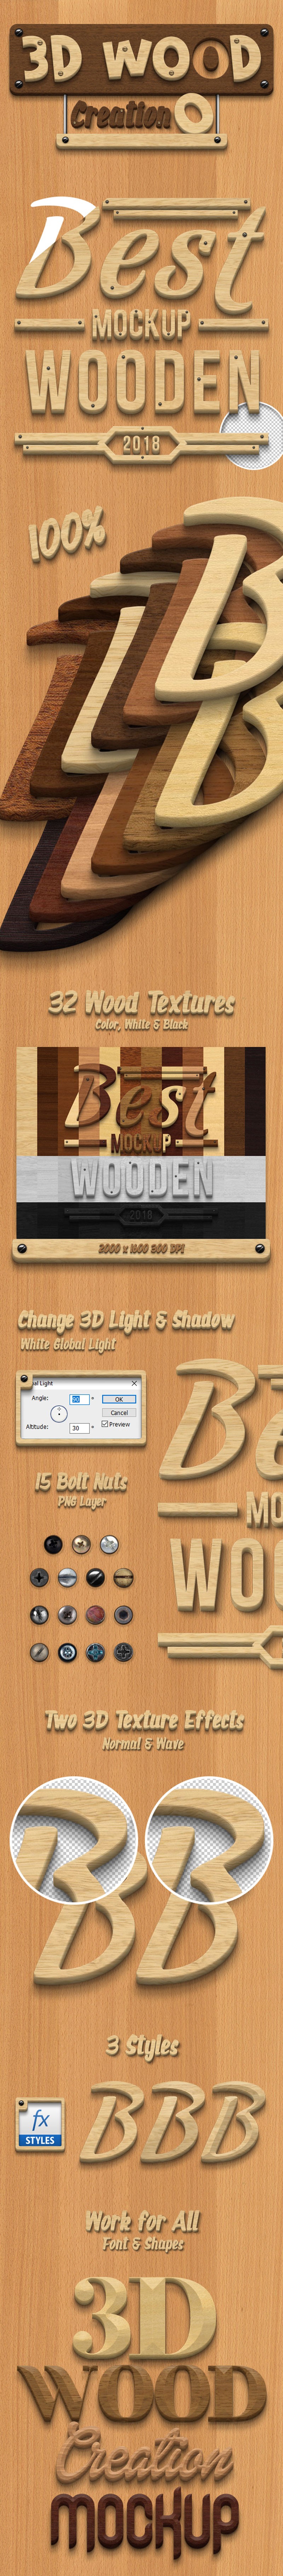 3D立体木质文字特效PS图层样式 插件预设 第1张